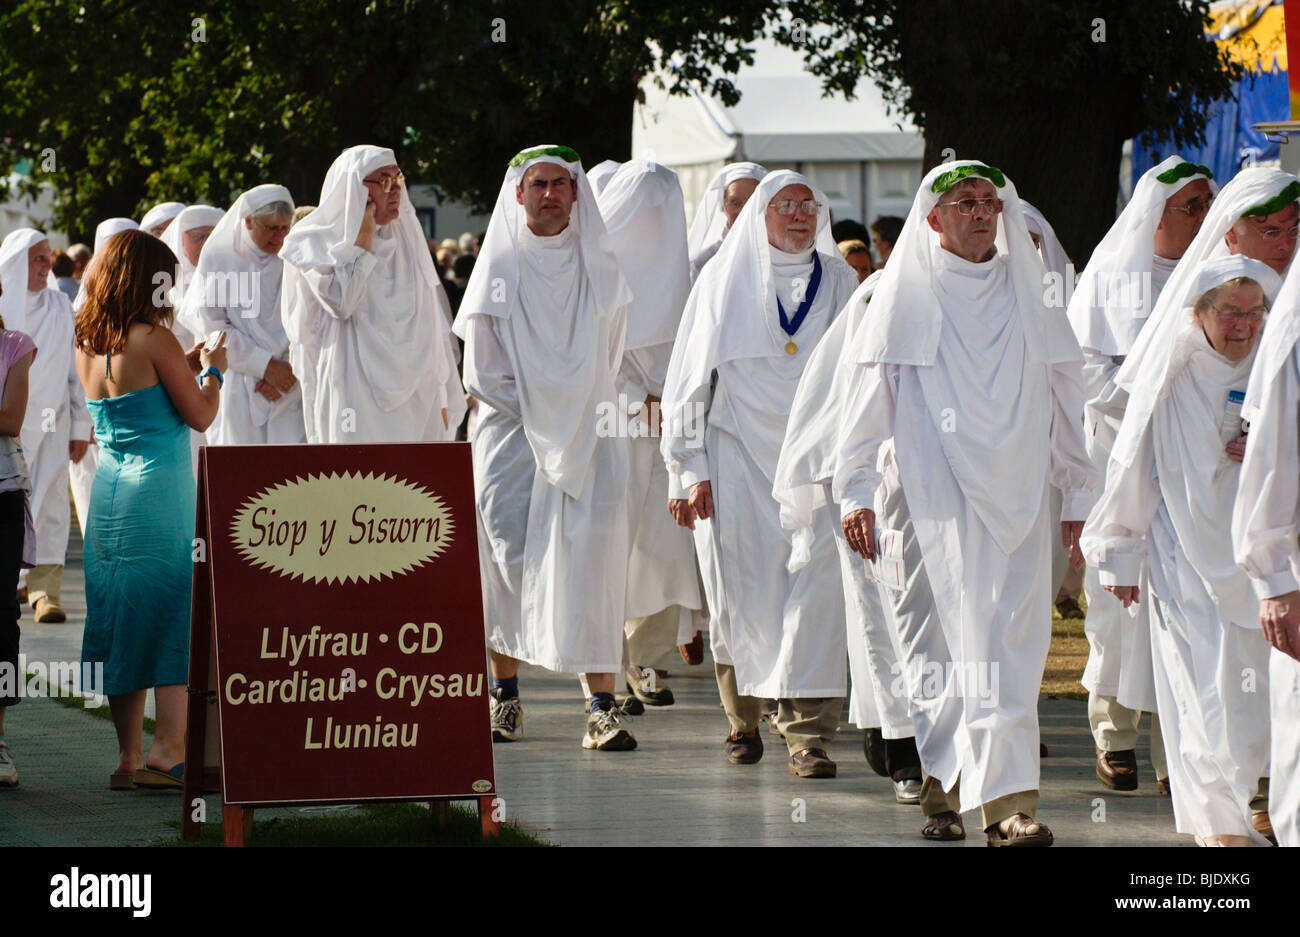 Robe blanche Gorsedd des bardes de procession à la lumière au cinéma Newport Gwent South Wales UK Banque D'Images